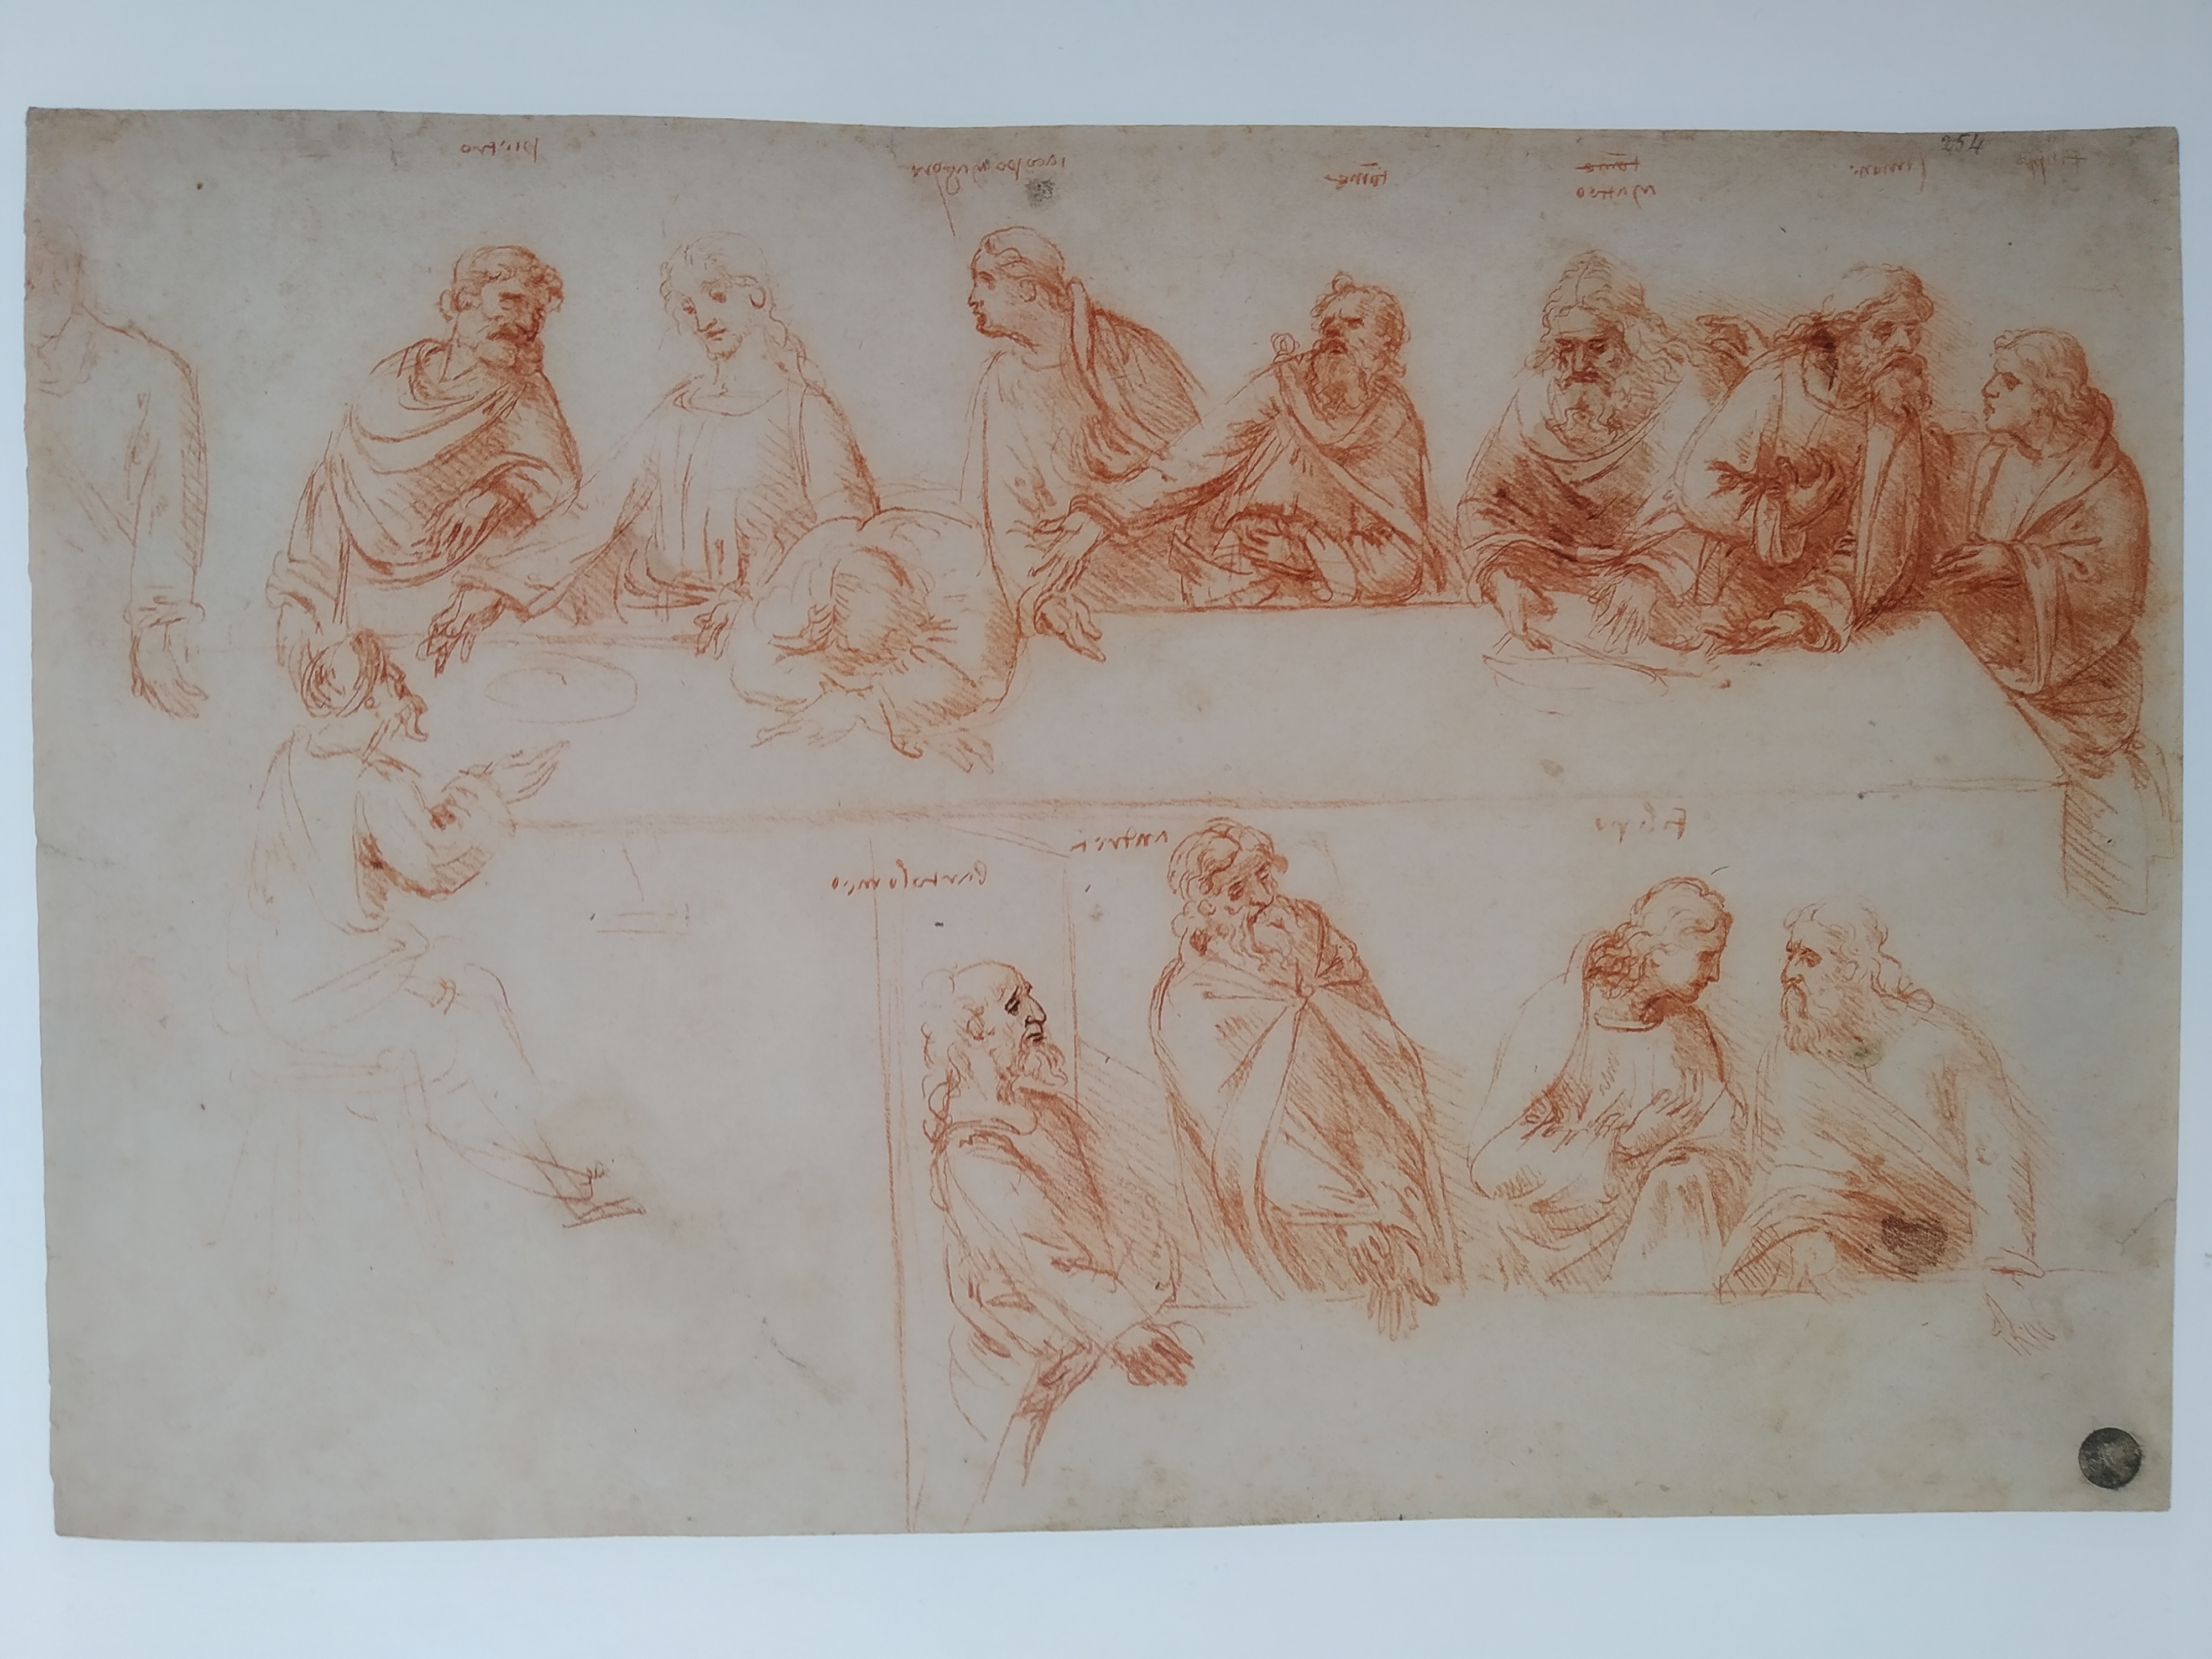 Study for the Last Supper by Leonardo da Vinci as in L'uomo modello del mondo